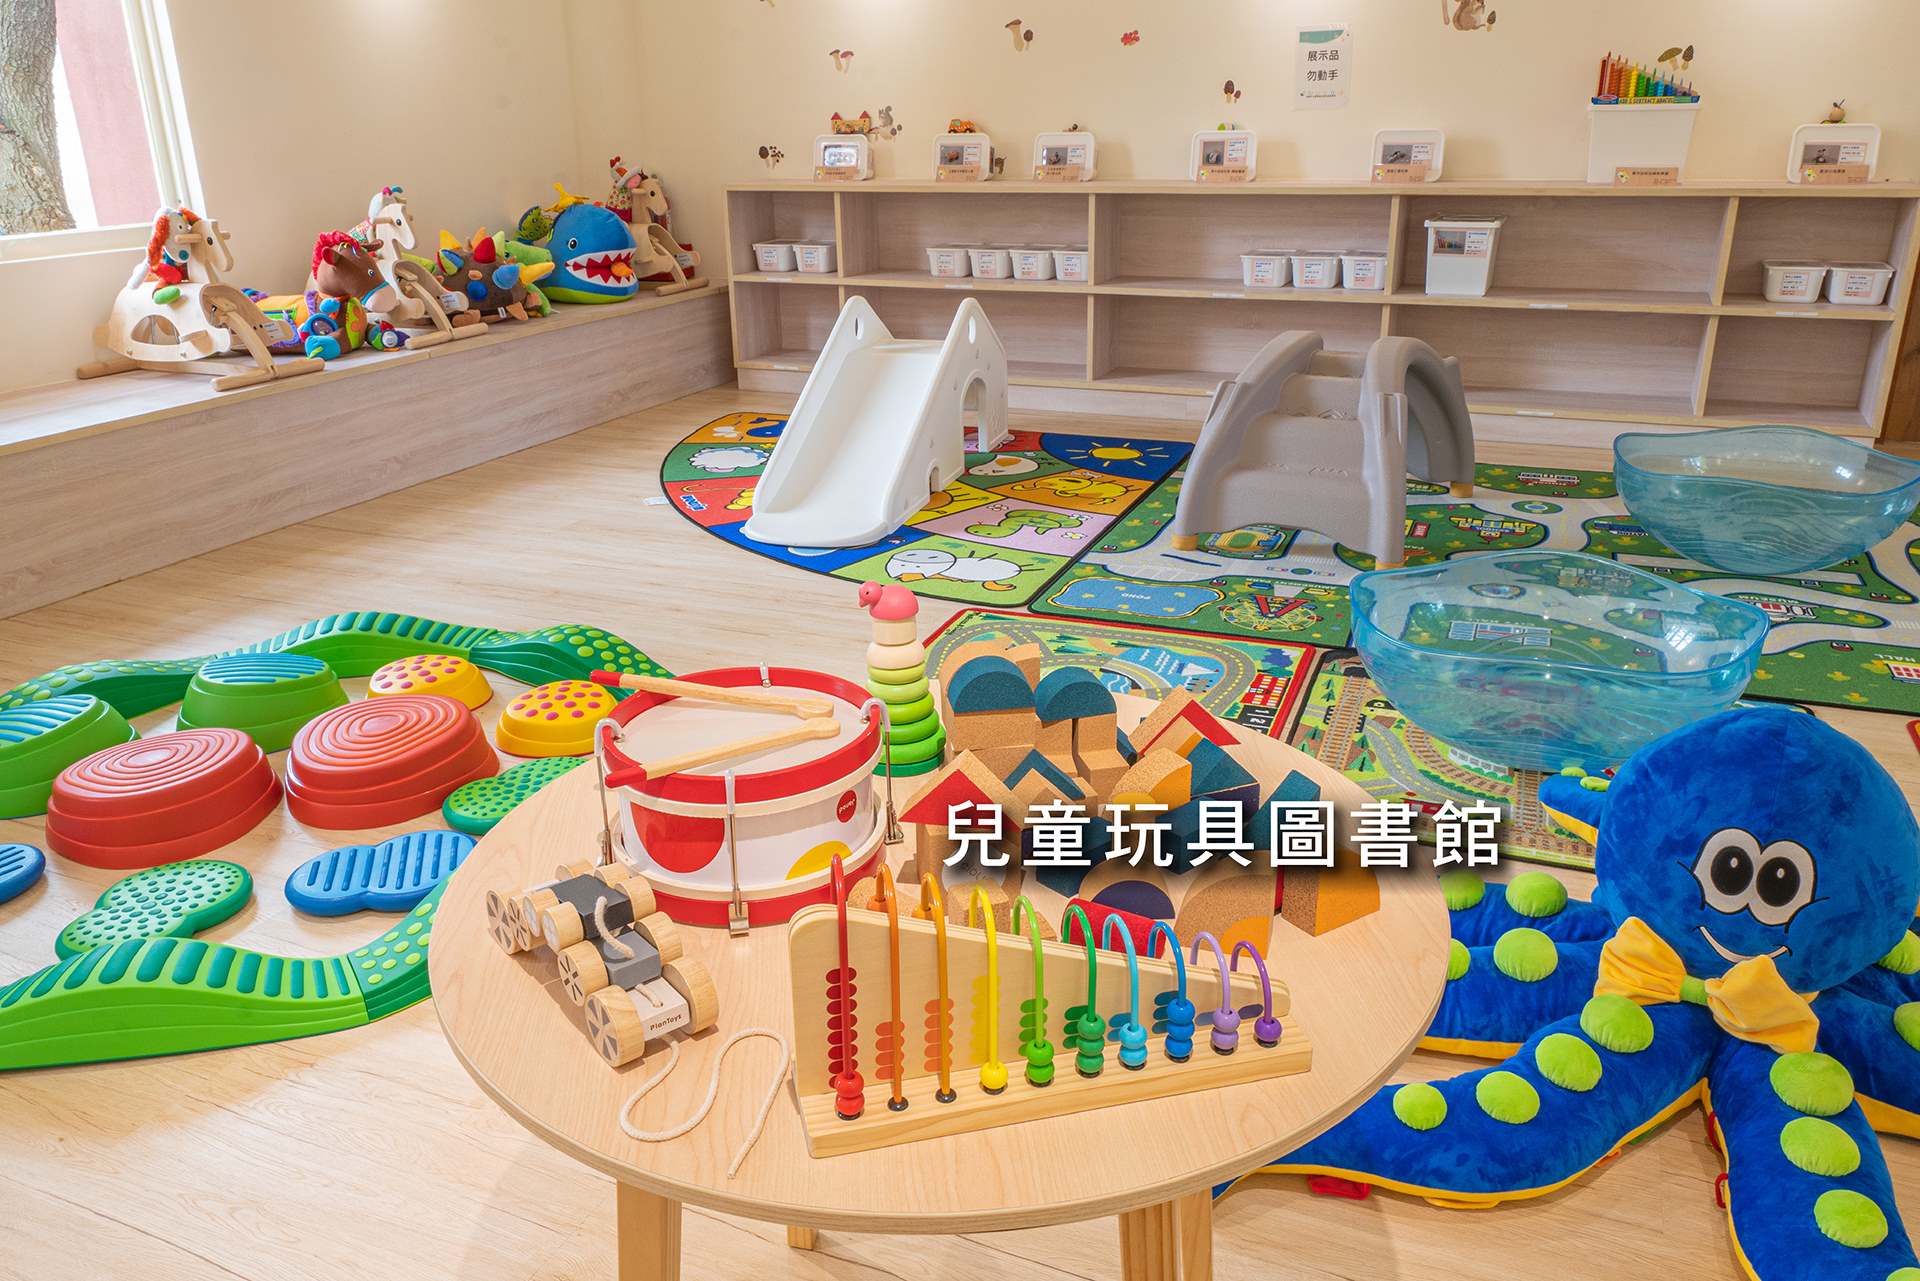 八德區兒童玩具圖書館第1期空間設計與修復工程*